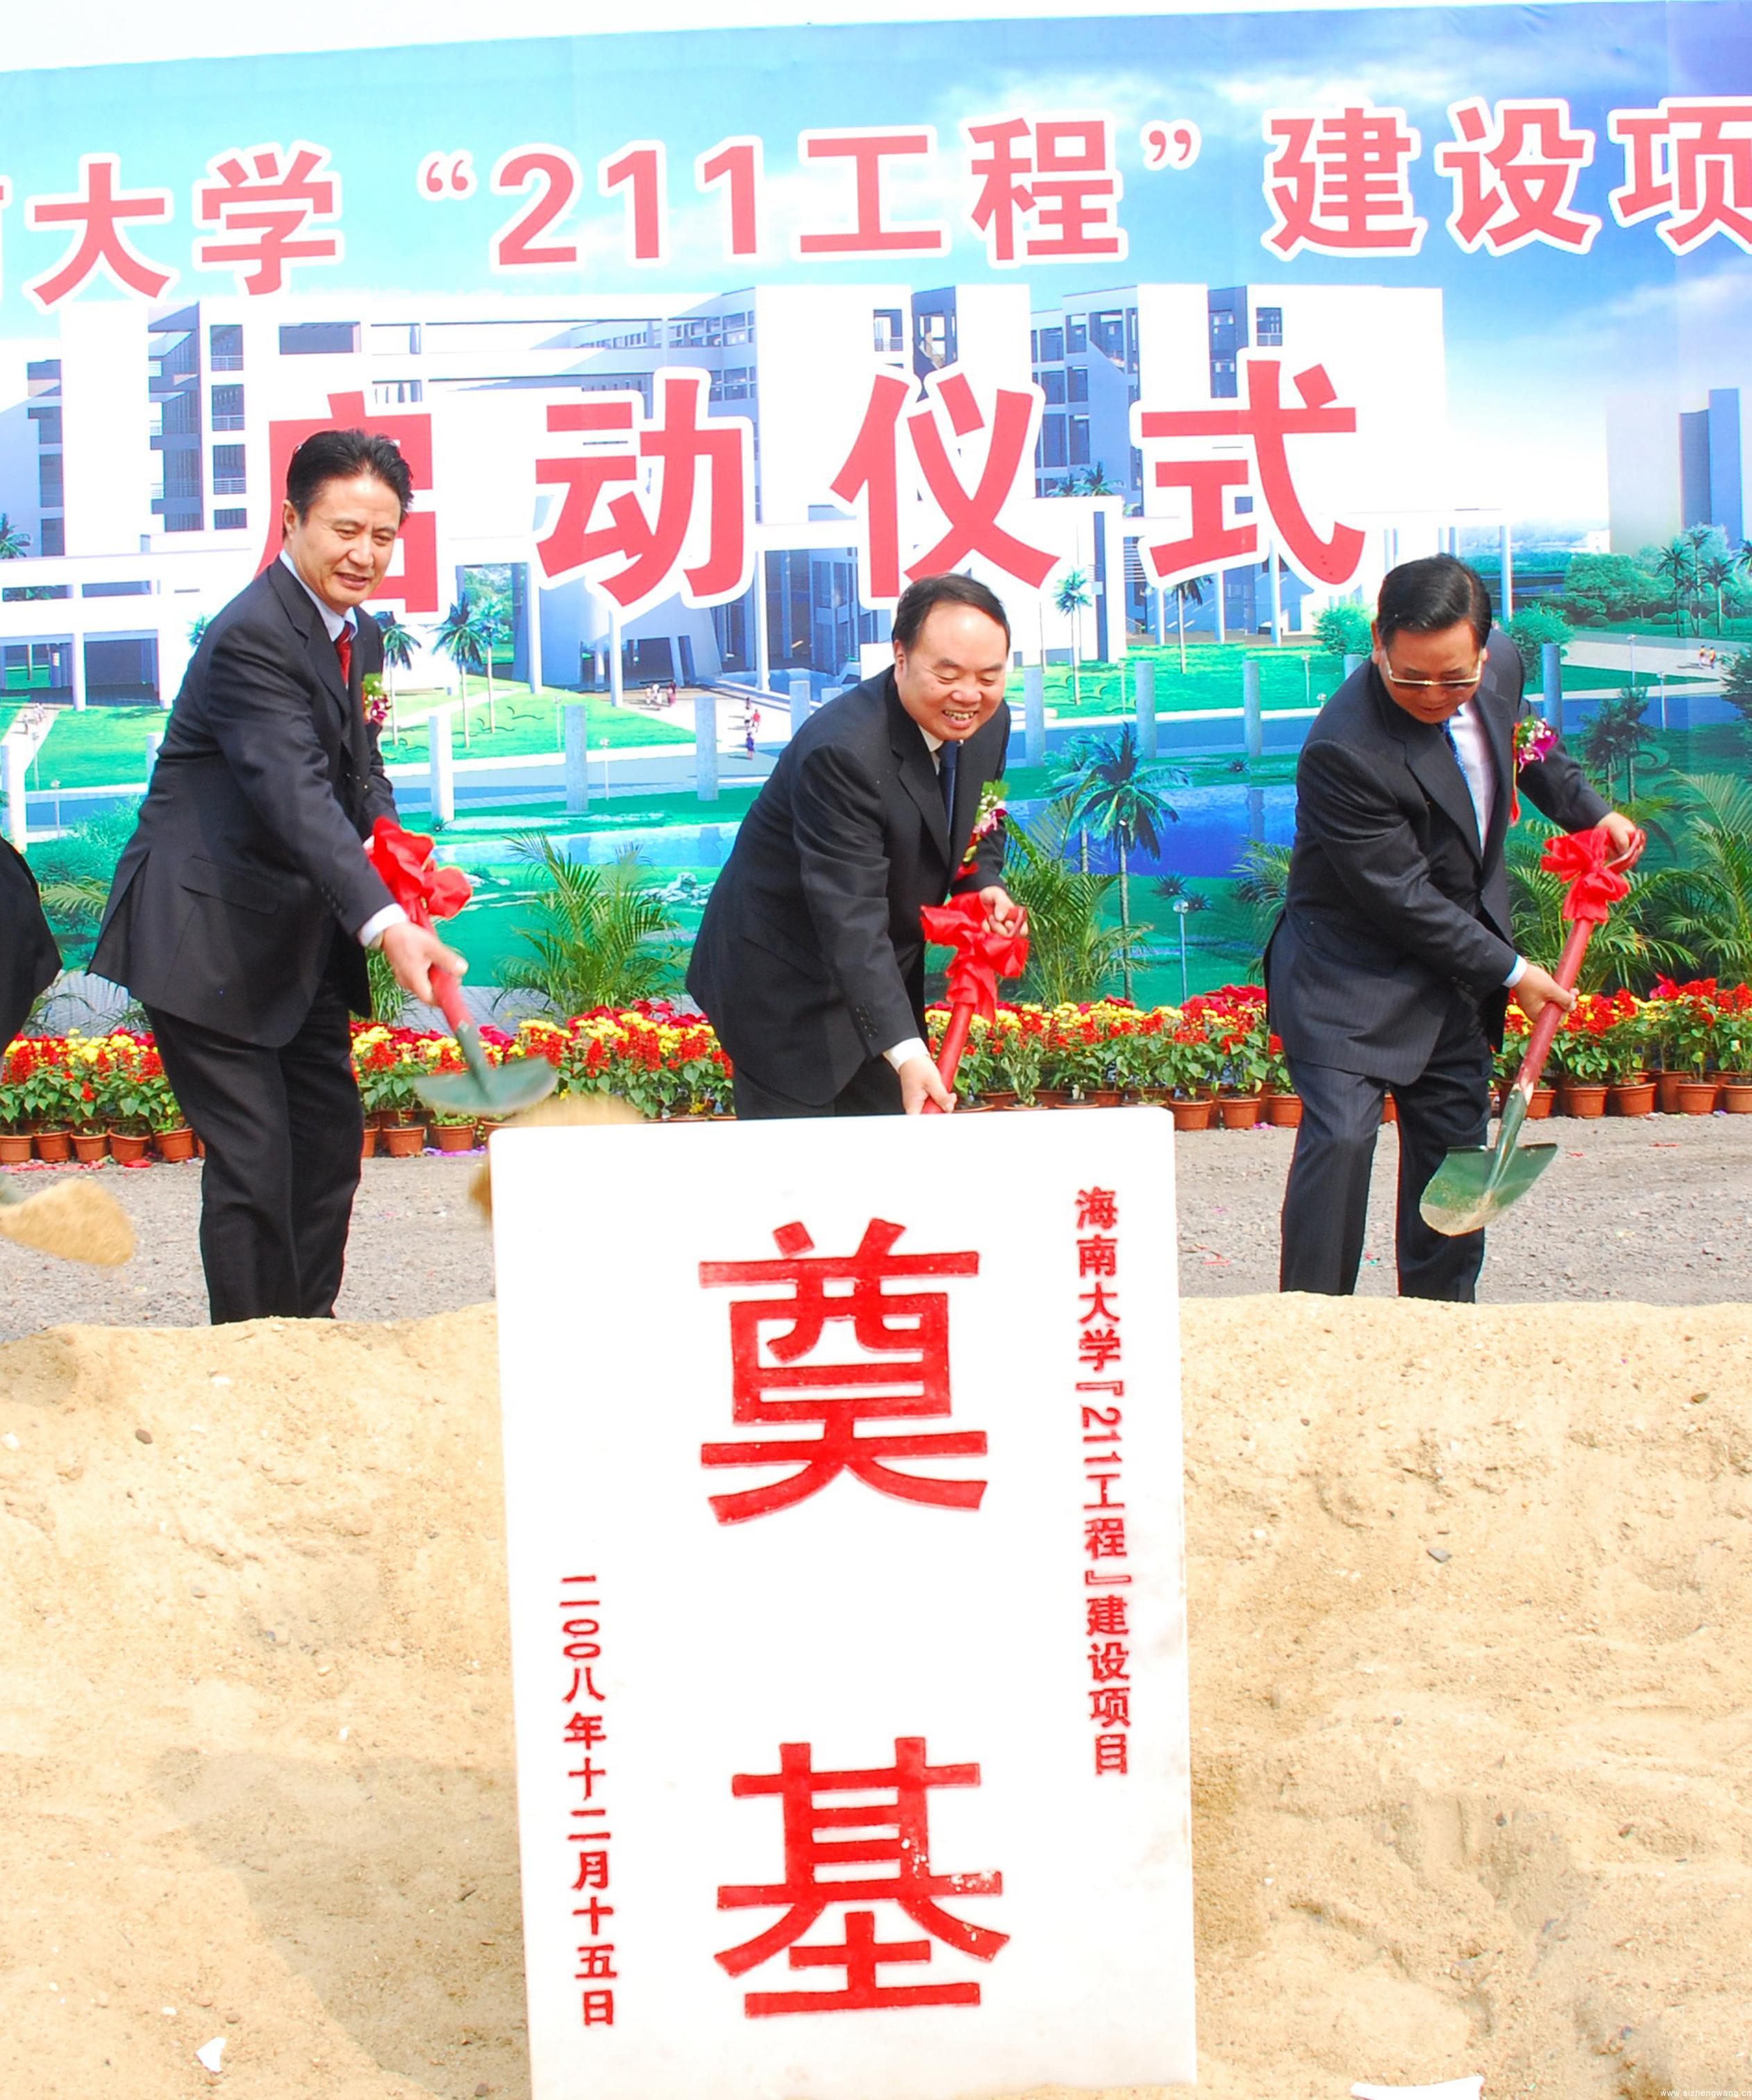 2007年11月，海南省与教育部签订省部共建海南大学协议，为学校争取进入“211工程”大学奠定基础。图为海南大学“211工程”建设启动仪式。